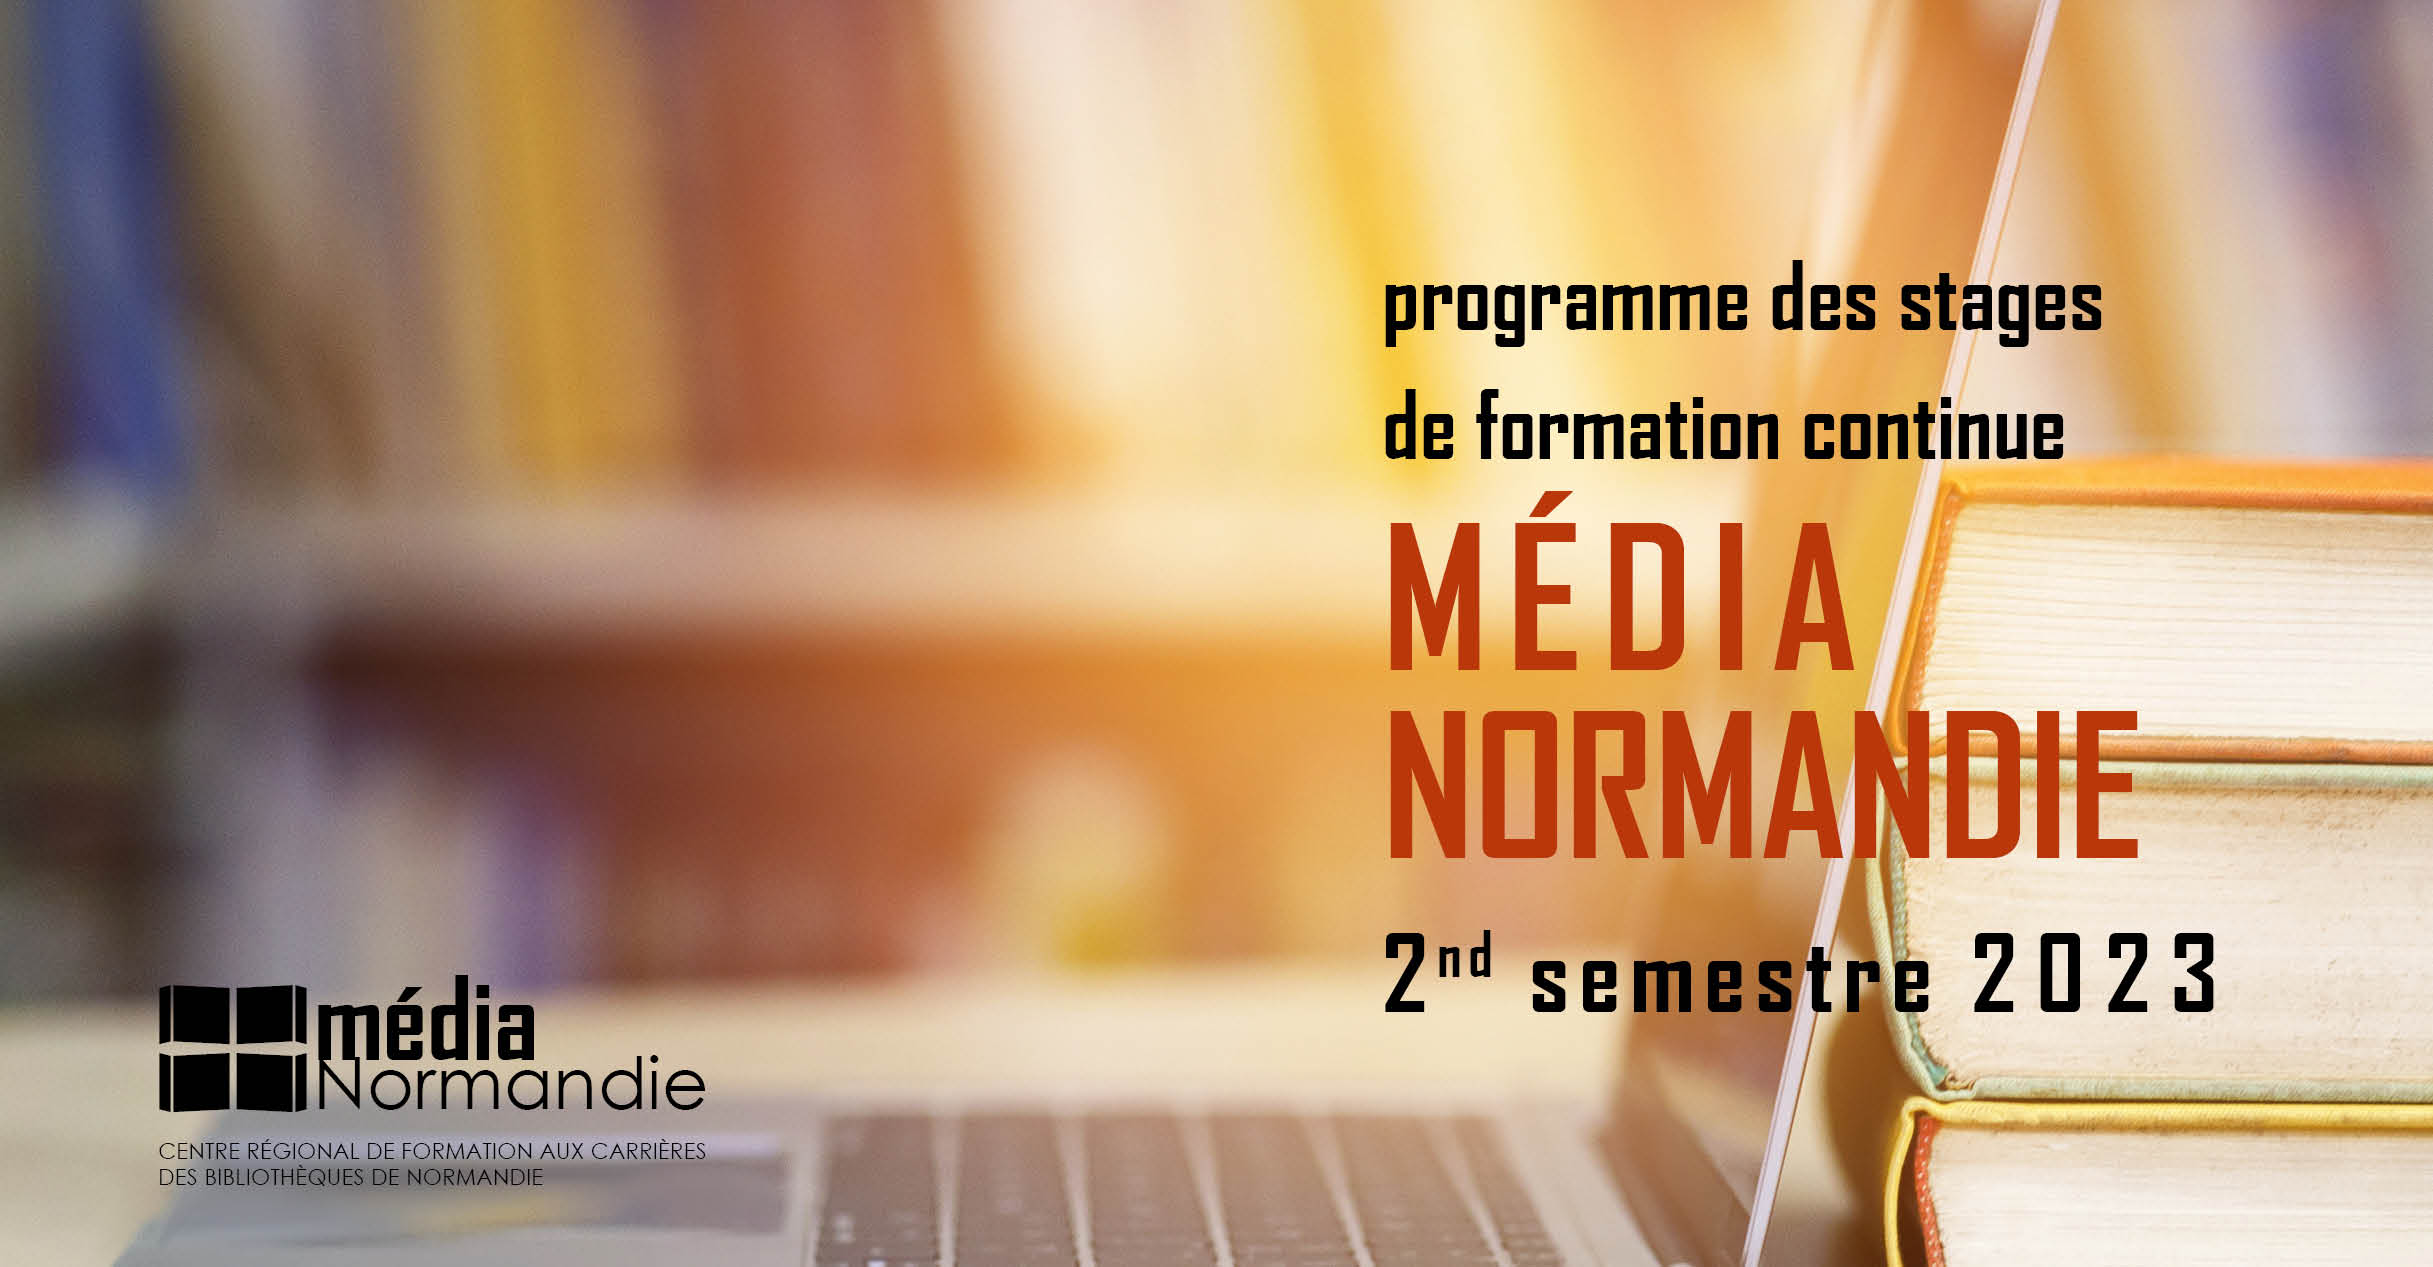 programme des stages de formation continue Média Normandie 2nd semestre 2023